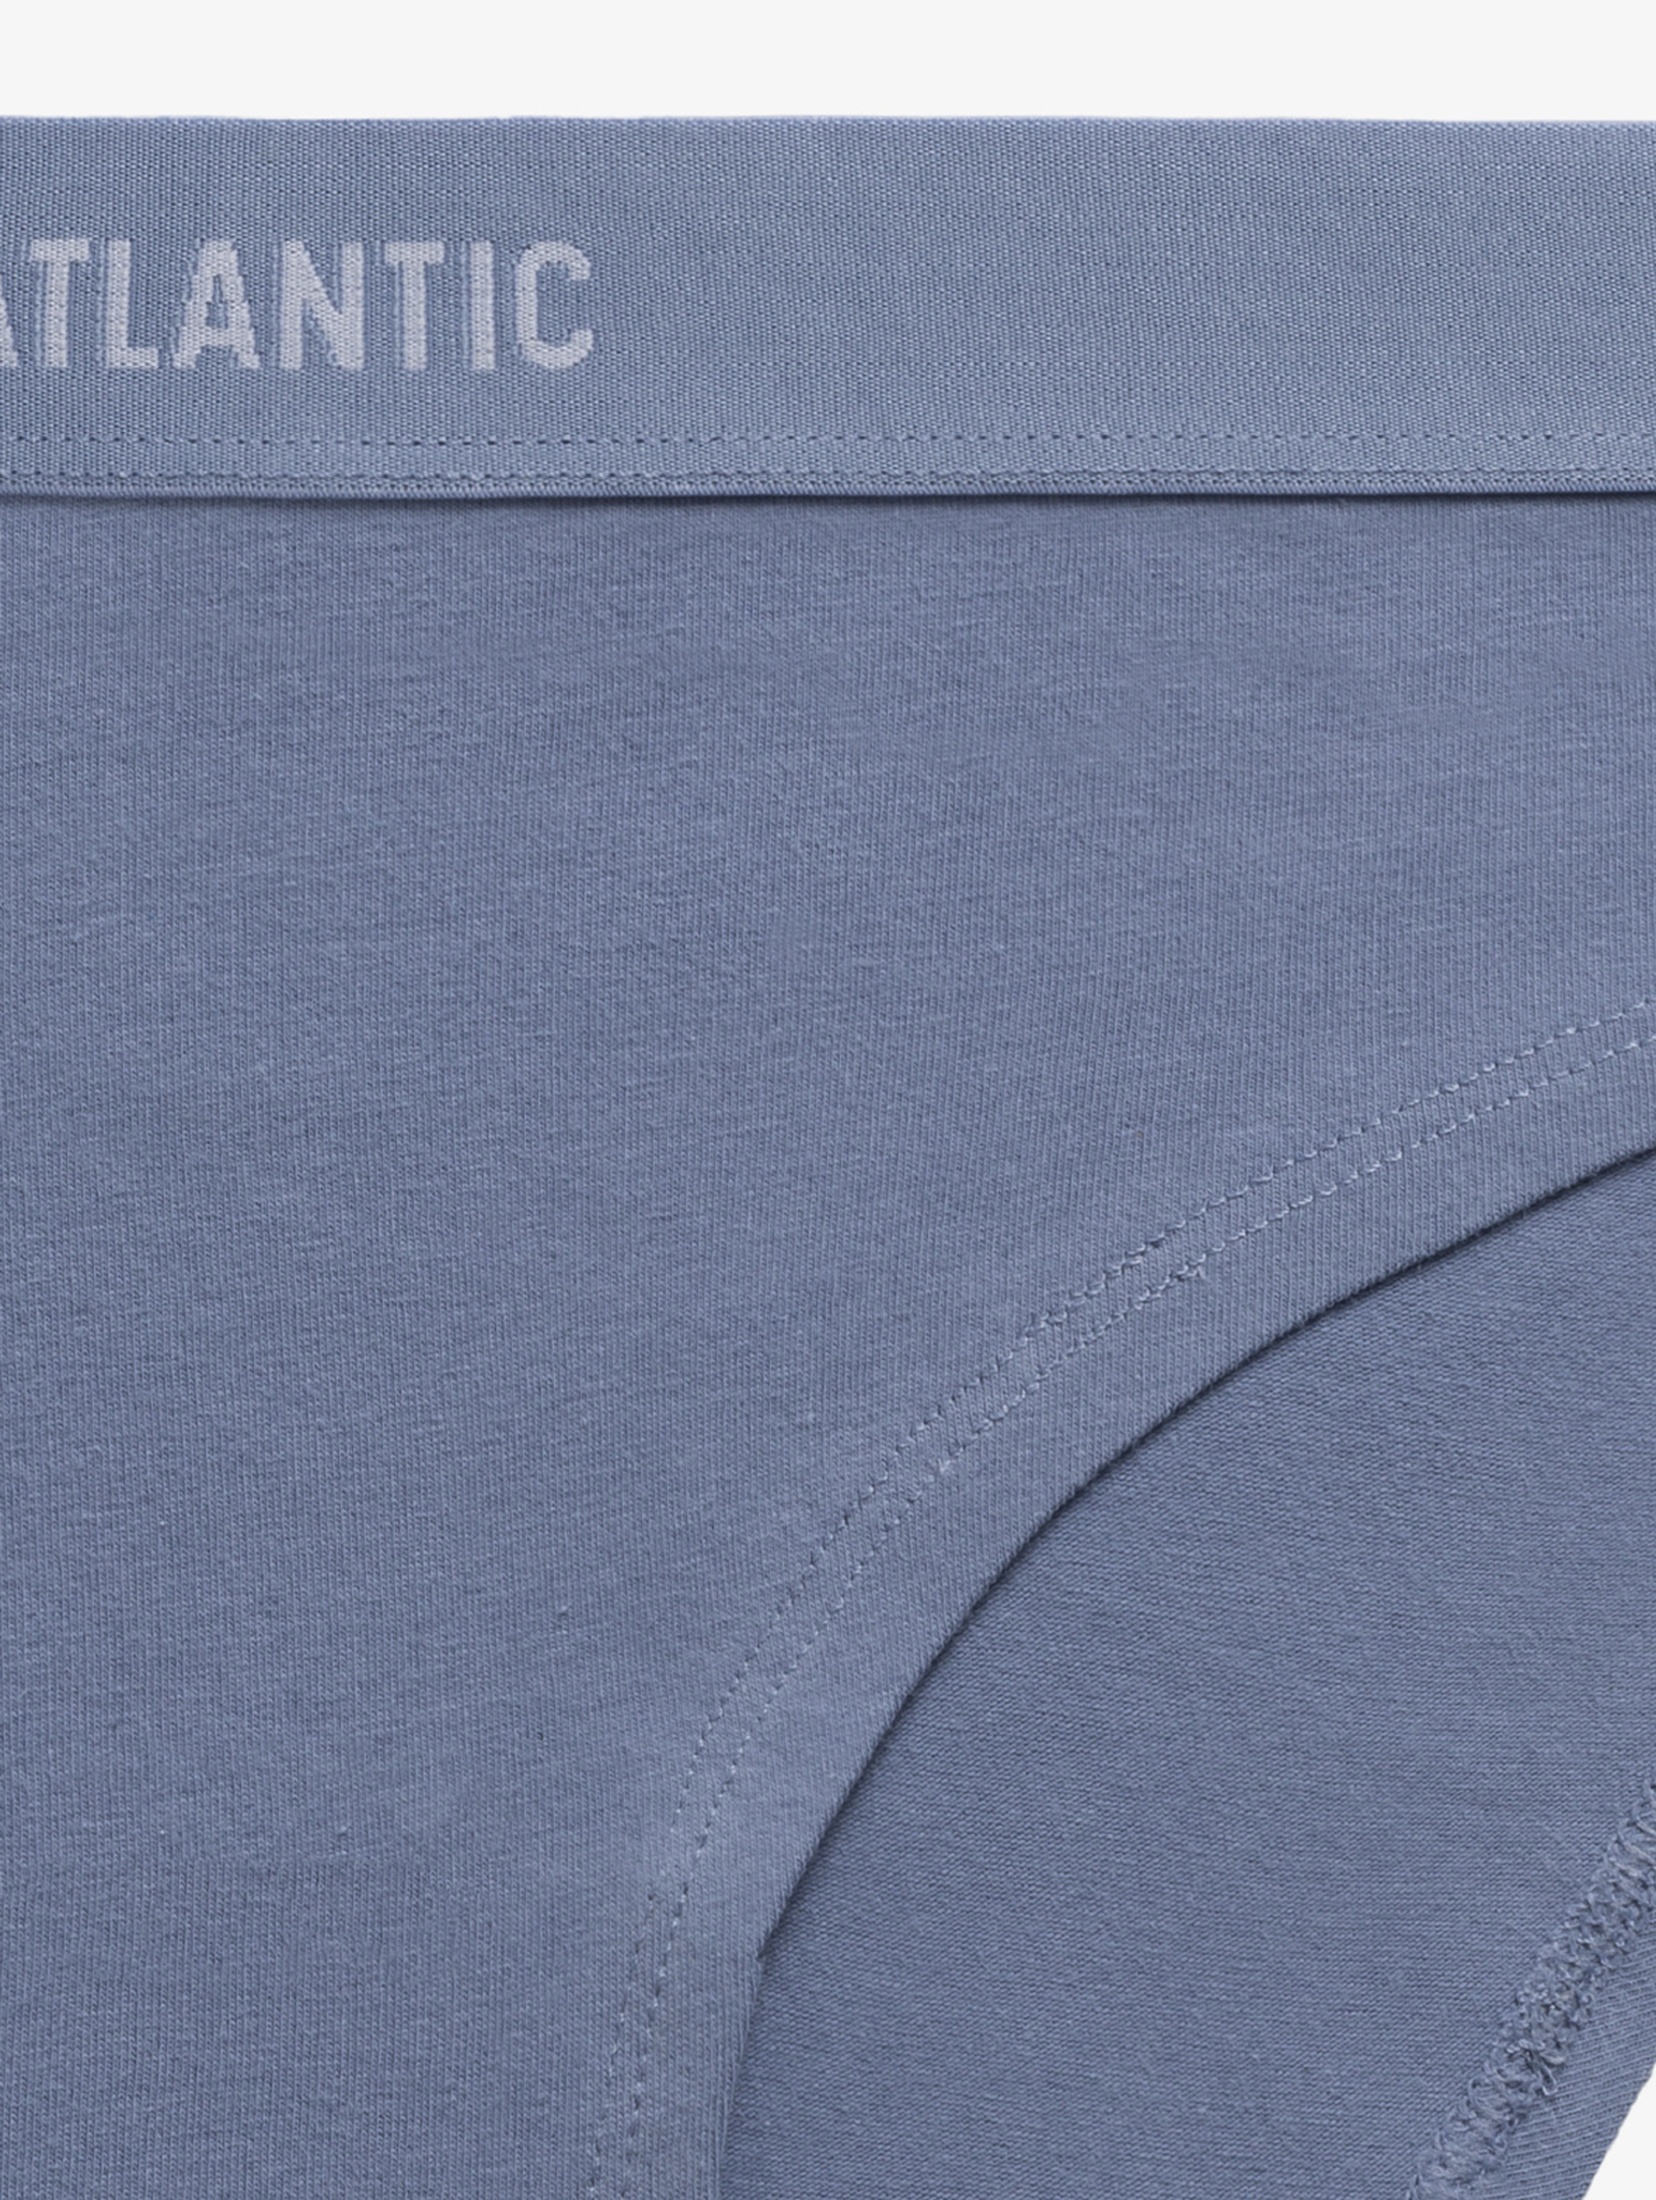 Majtki sportowe niebieskie, brązowe, różowe - Atlantic